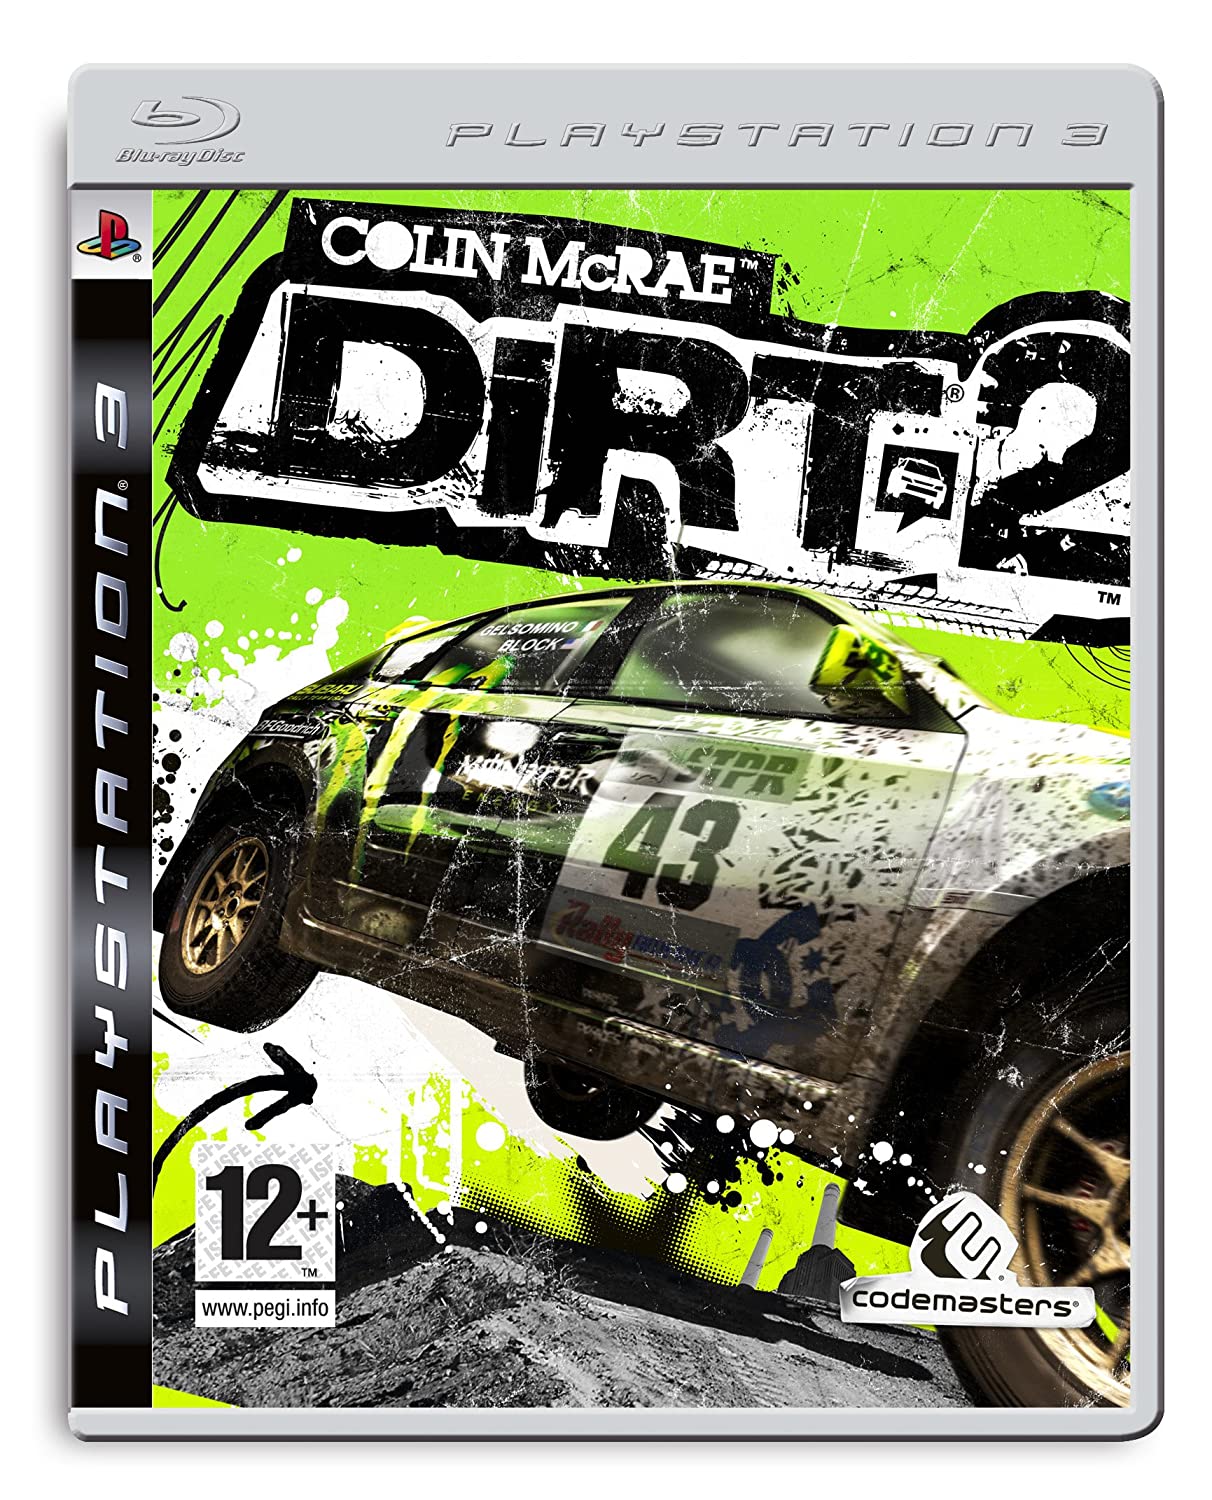 Dirt 2 PS3-Fehler beim Analysieren der Disc